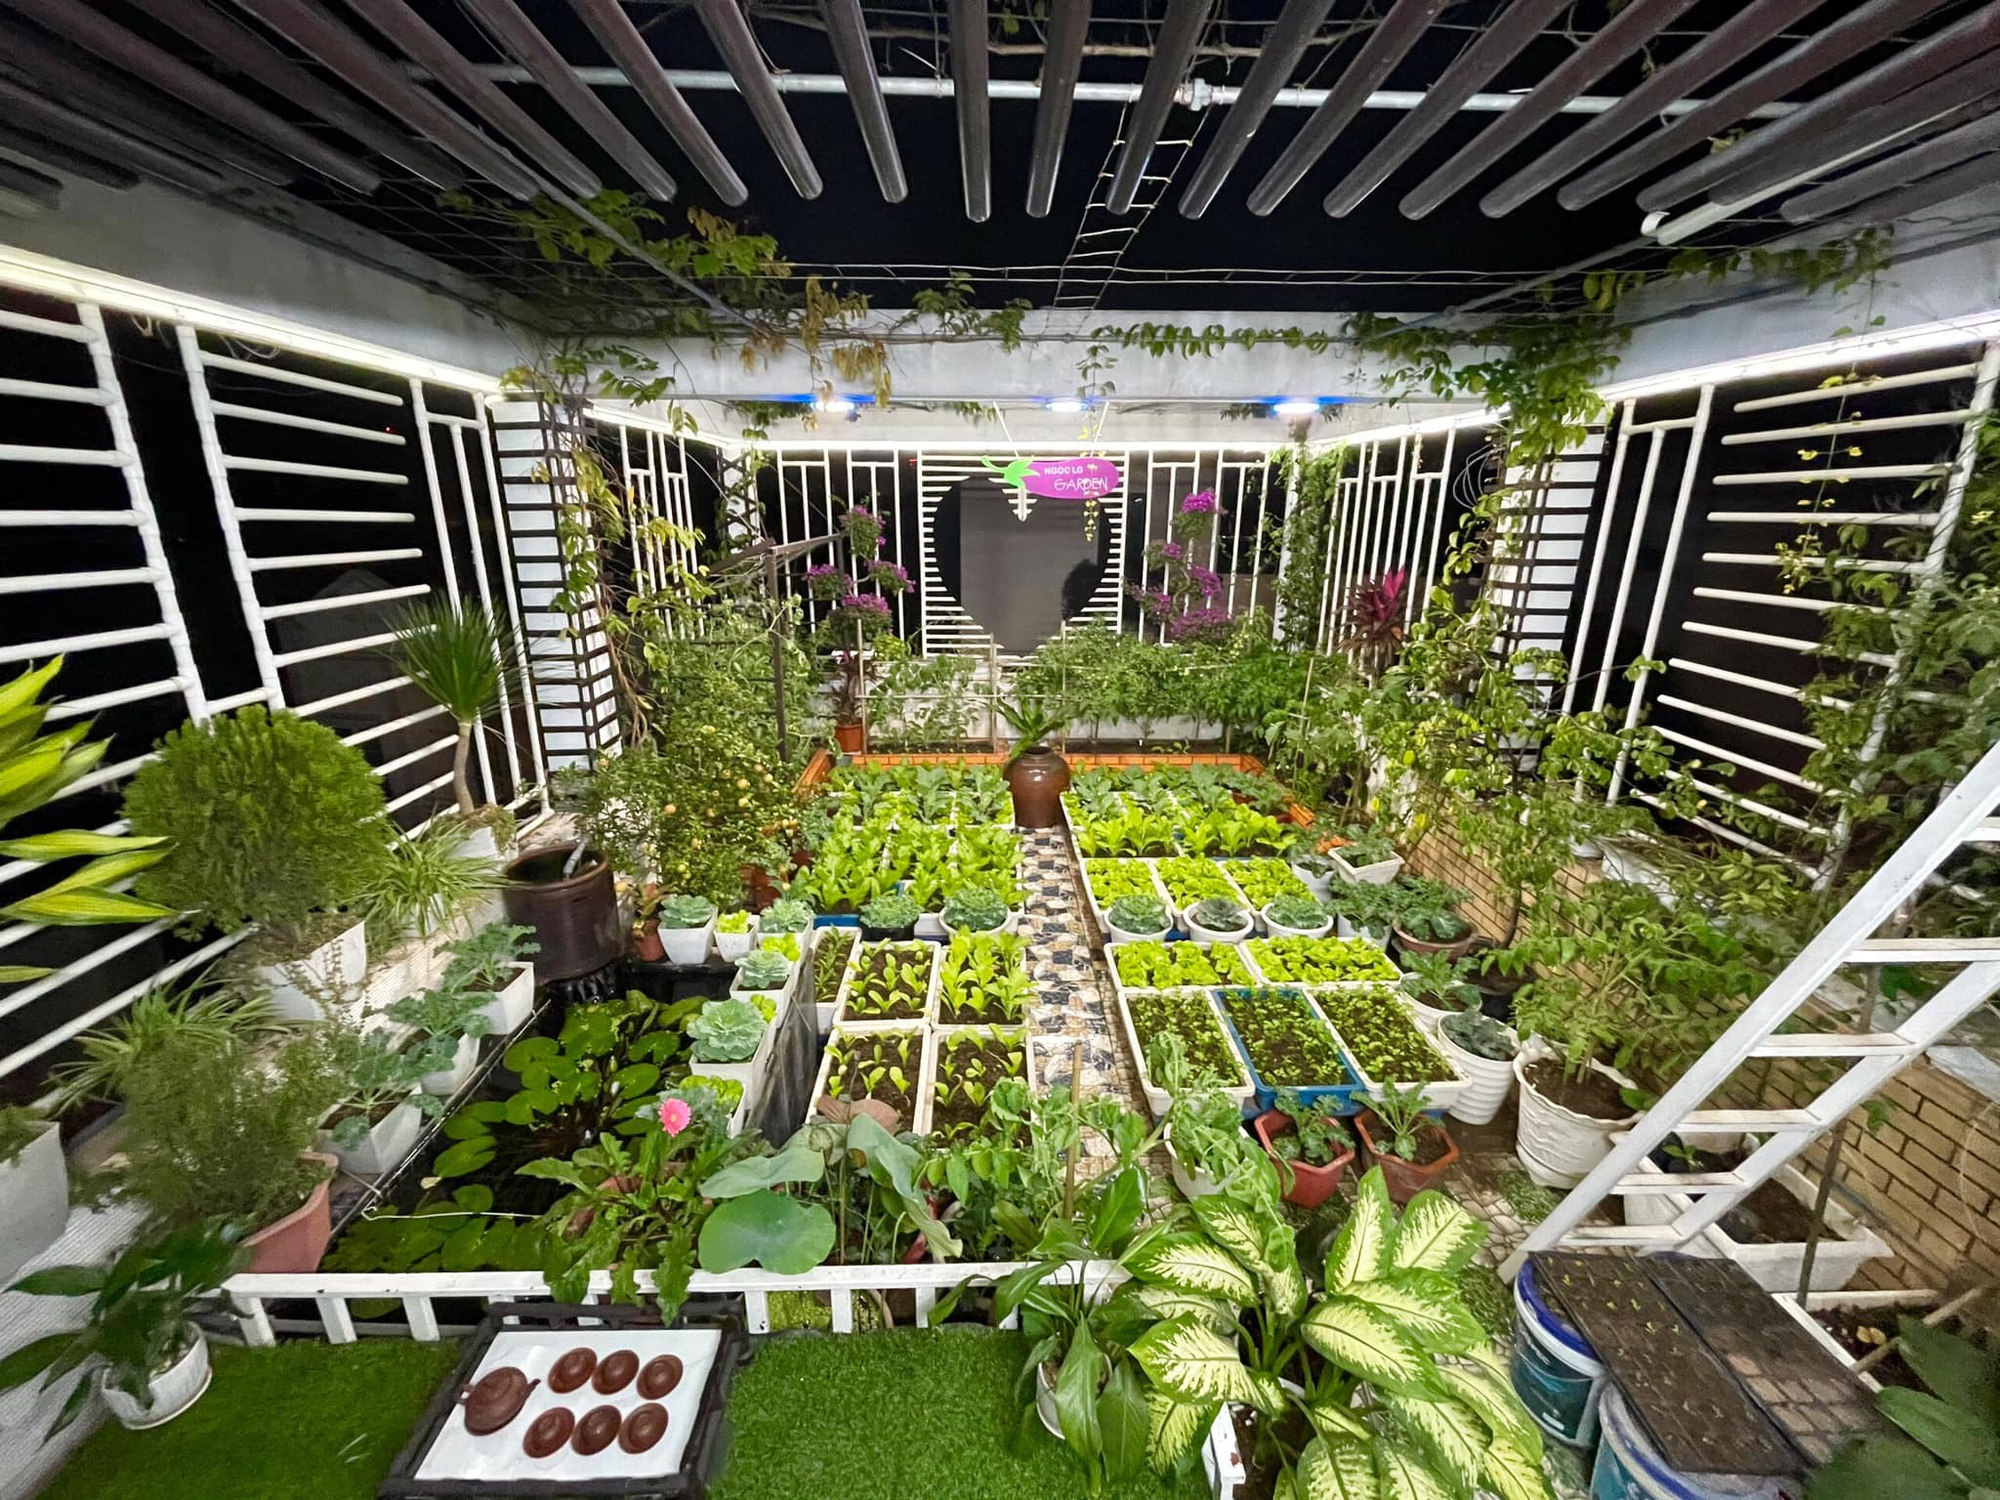 Khu vườn sân thượng: Không cần phải ra ngoài, bạn có thể sở hữu một khu vườn xanh mát ngay trên sân thượng của mình. Tận hưởng không gian sống trong lành và xanh tươi, tạo ra không gian thư giãn và giảm căng thẳng. Hãy dành chút thời gian để tạo ra một khu vườn sân thượng đẹp mắt, bạn sẽ tìm thấy sự thư thái và hạnh phúc của mình.